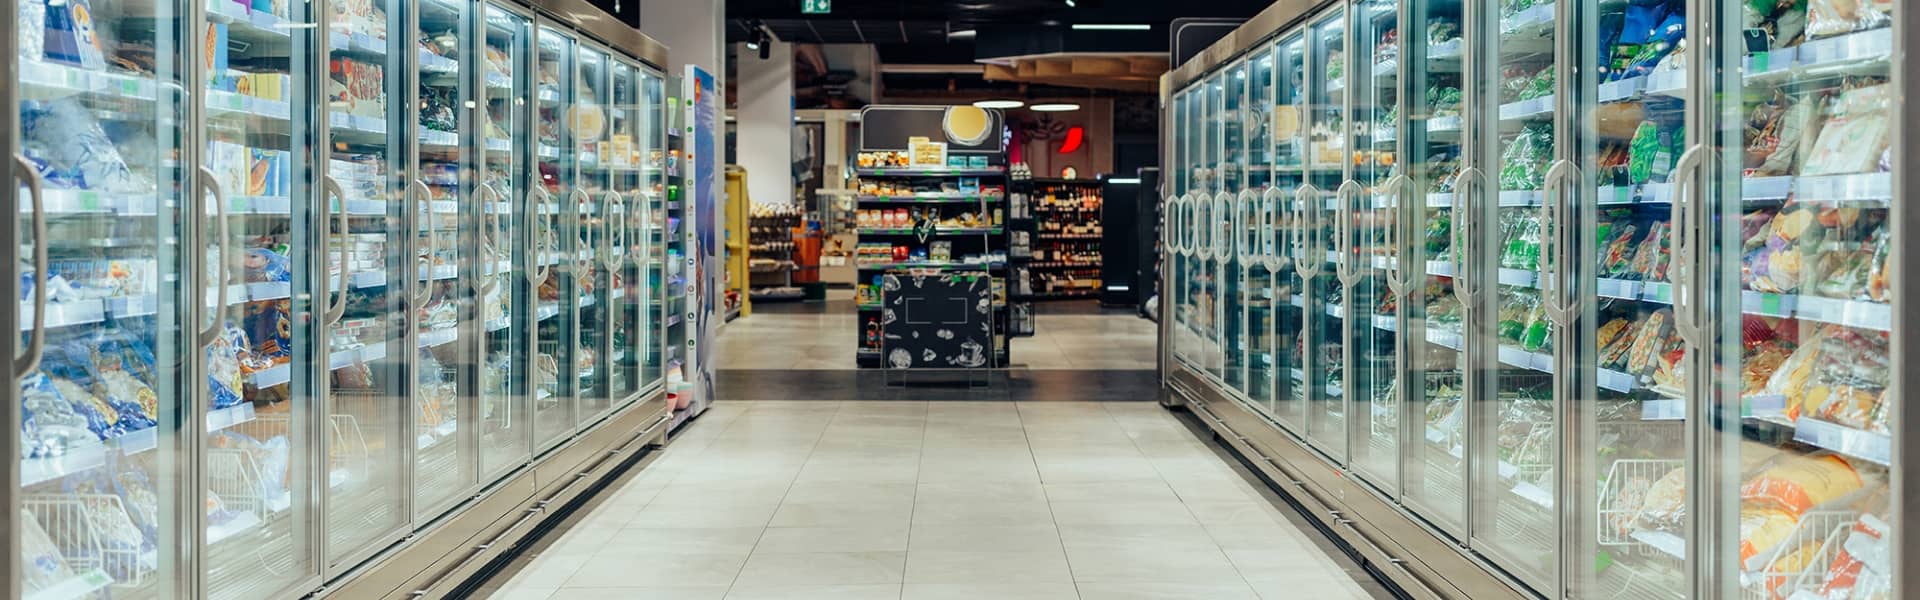 Photo d'une allée de supermarché avec des congélateurs commerciaux des deux côtés